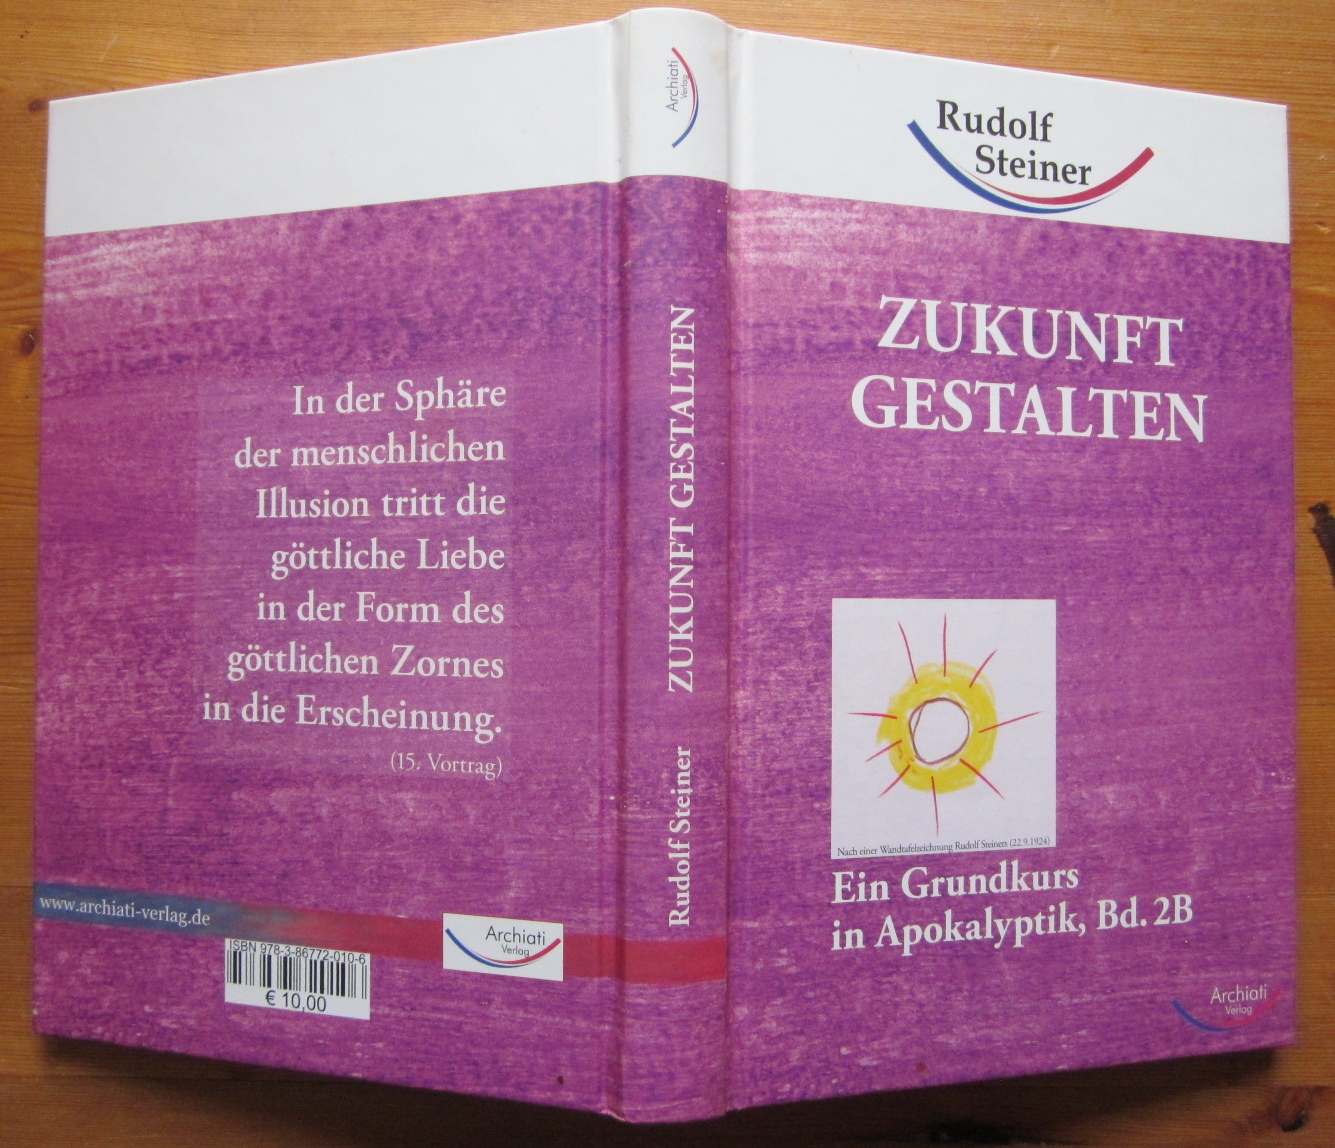 Zukunft gestalten. Ein Grundkurs in Apokalyptik, Bd. 2B. - Steiner, Rudolf